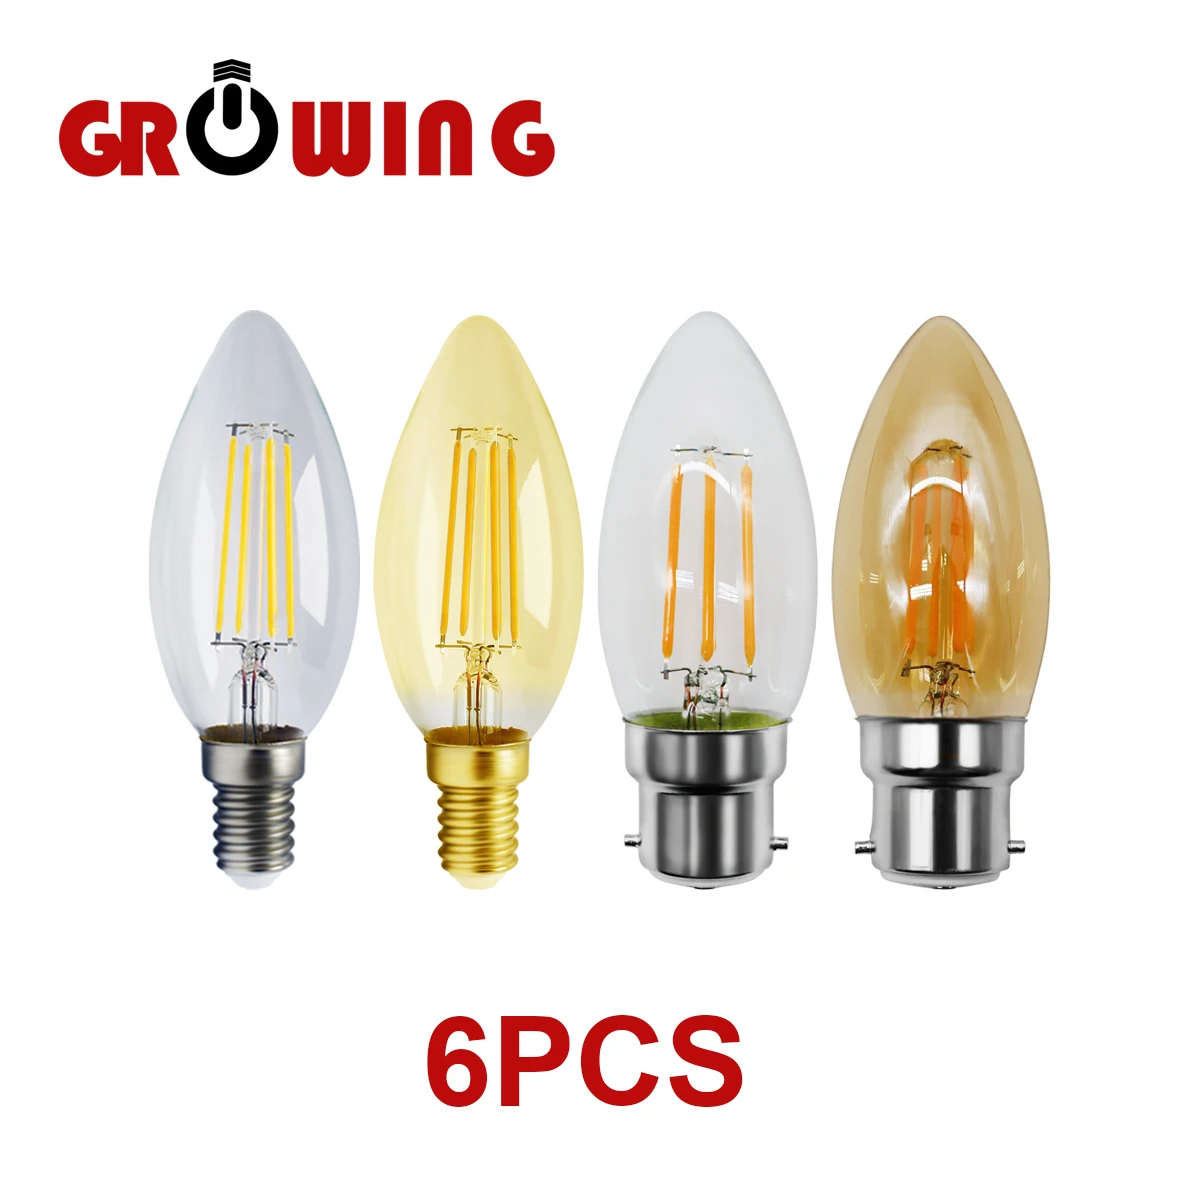 

6pcs/lot Filament Bulb C35 4w Retro Edison Bulb E14 B22 Bombillas 220v-240v Vintage Lamp 2700k 4000k Home Decoration